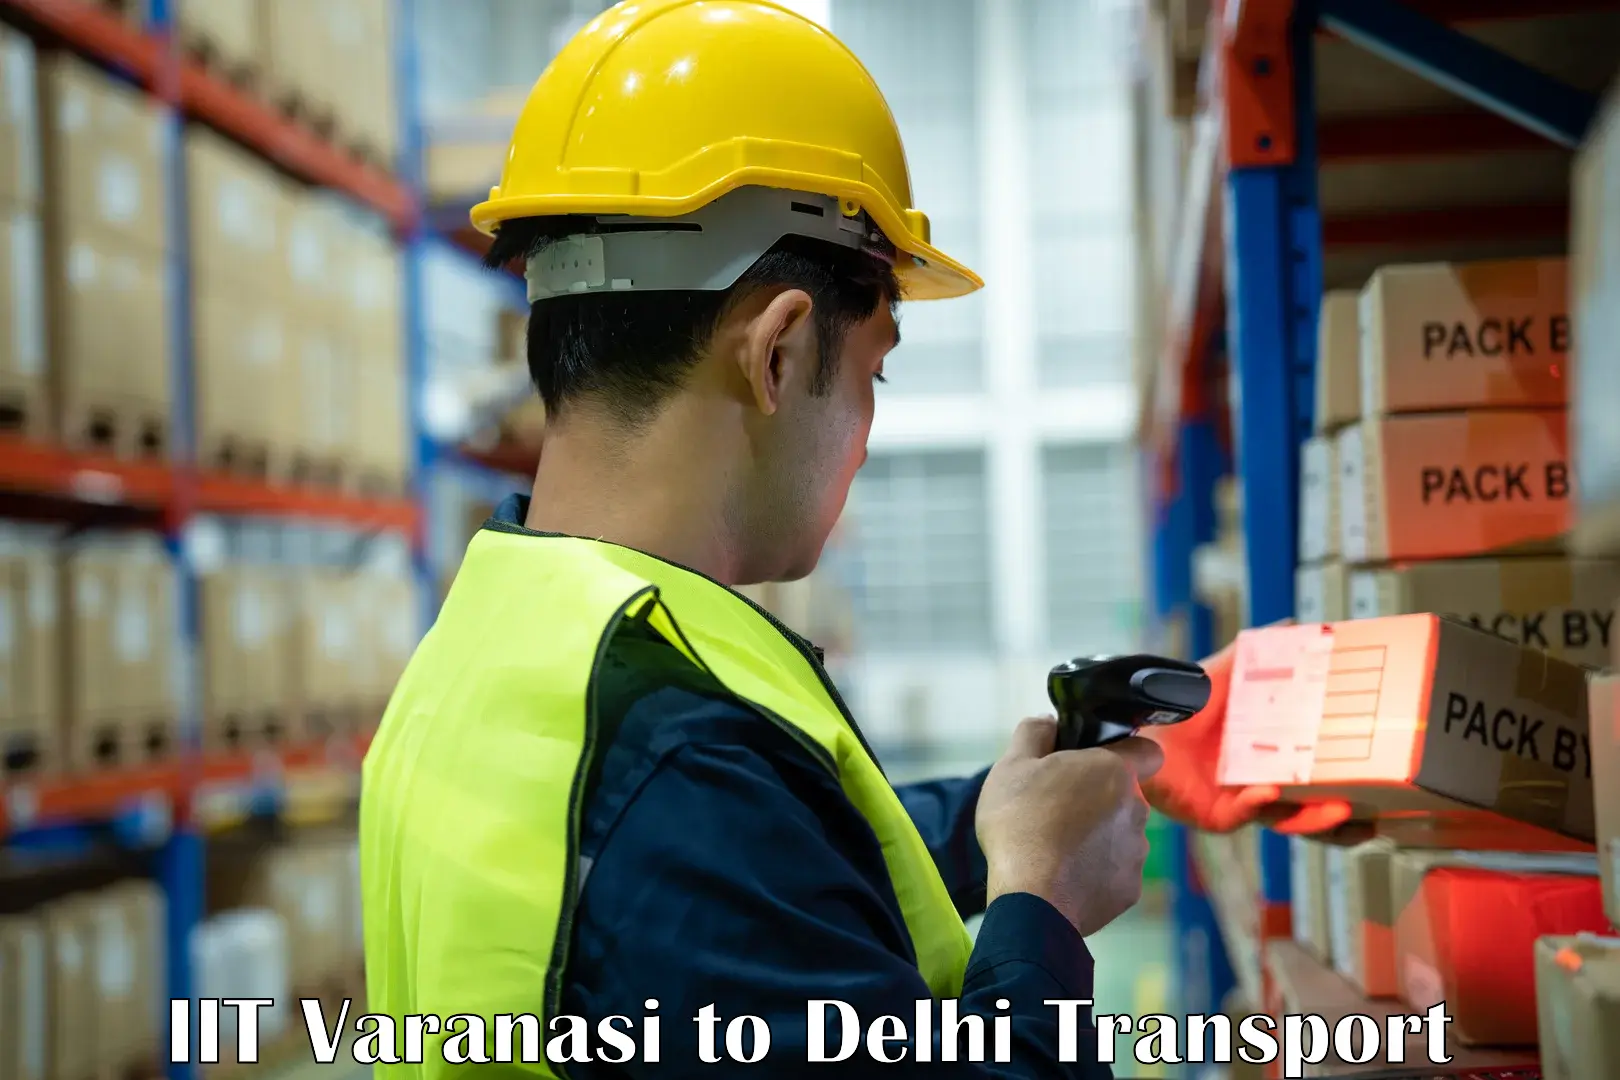 Daily transport service IIT Varanasi to Sarojini Nagar